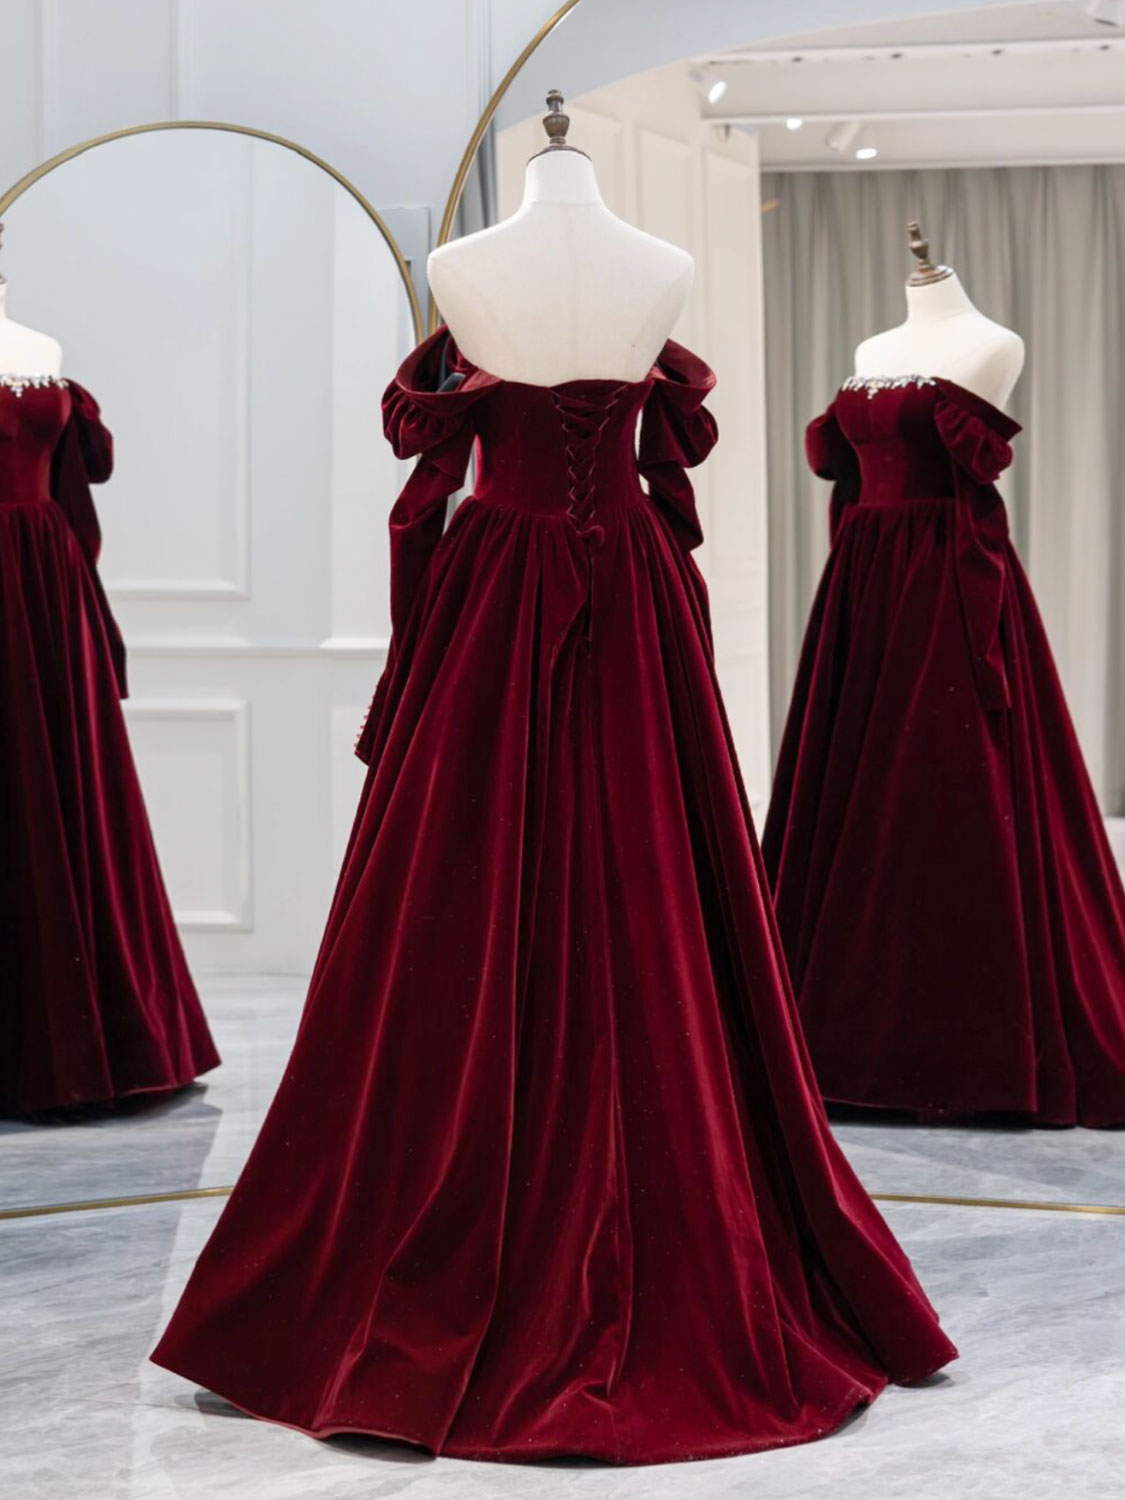 Burgundy velvet tulle prom dress burgundy evening dress · Little Cute ·  Online Store Powered by Storenvy